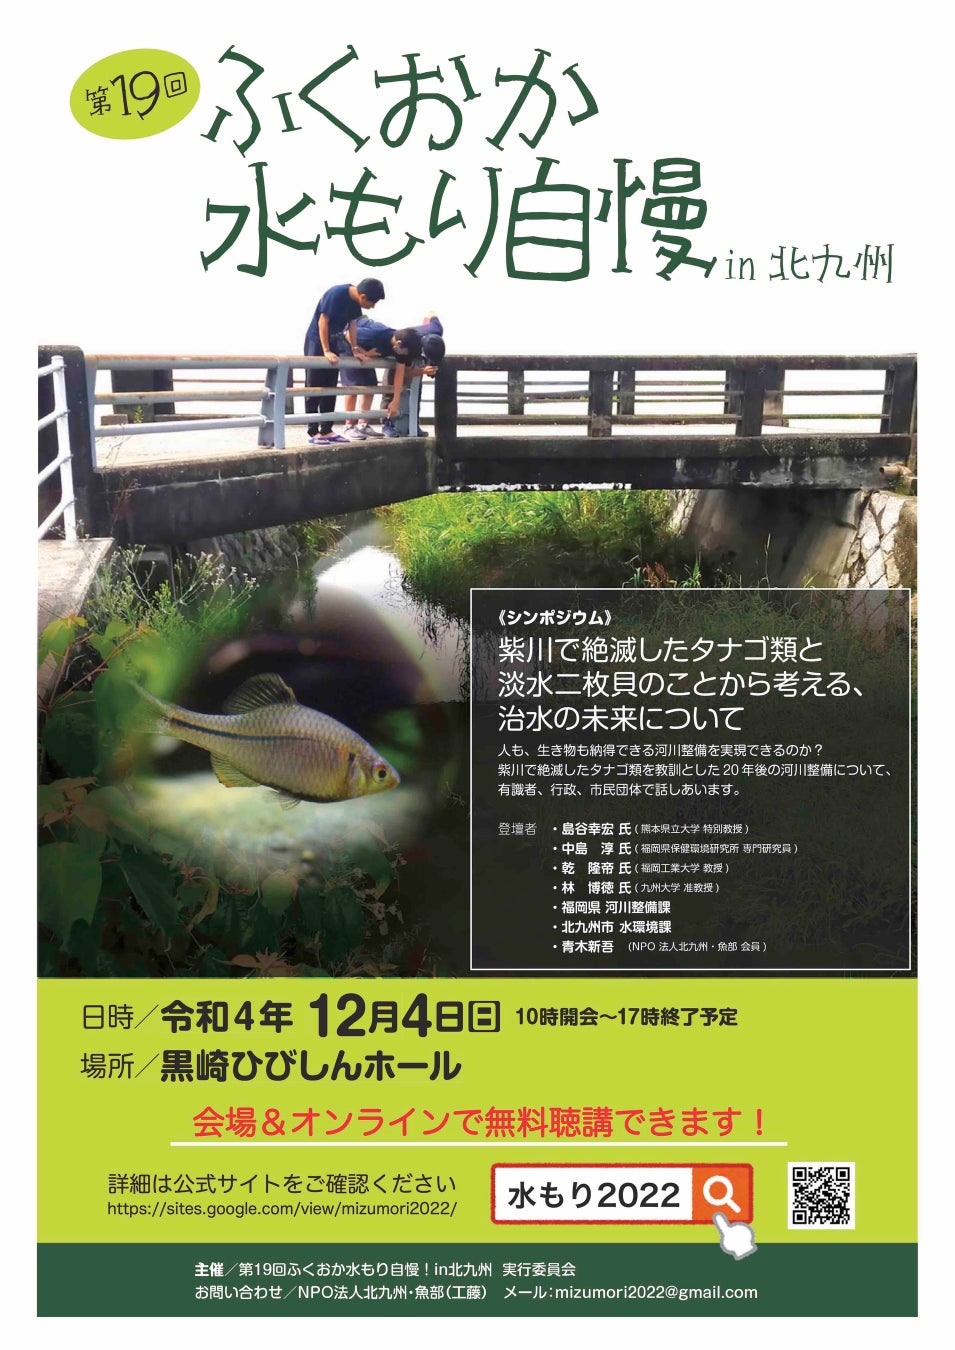 過去10年間でタナゴ4種が絶滅した北九州市の紫川。河川整備工事が影響か？市民・行政・専門家を集め、対策方針や自然と人との共生を議論する福岡県内最大規模の環境シンポジウムを12月4日に開催のサブ画像4